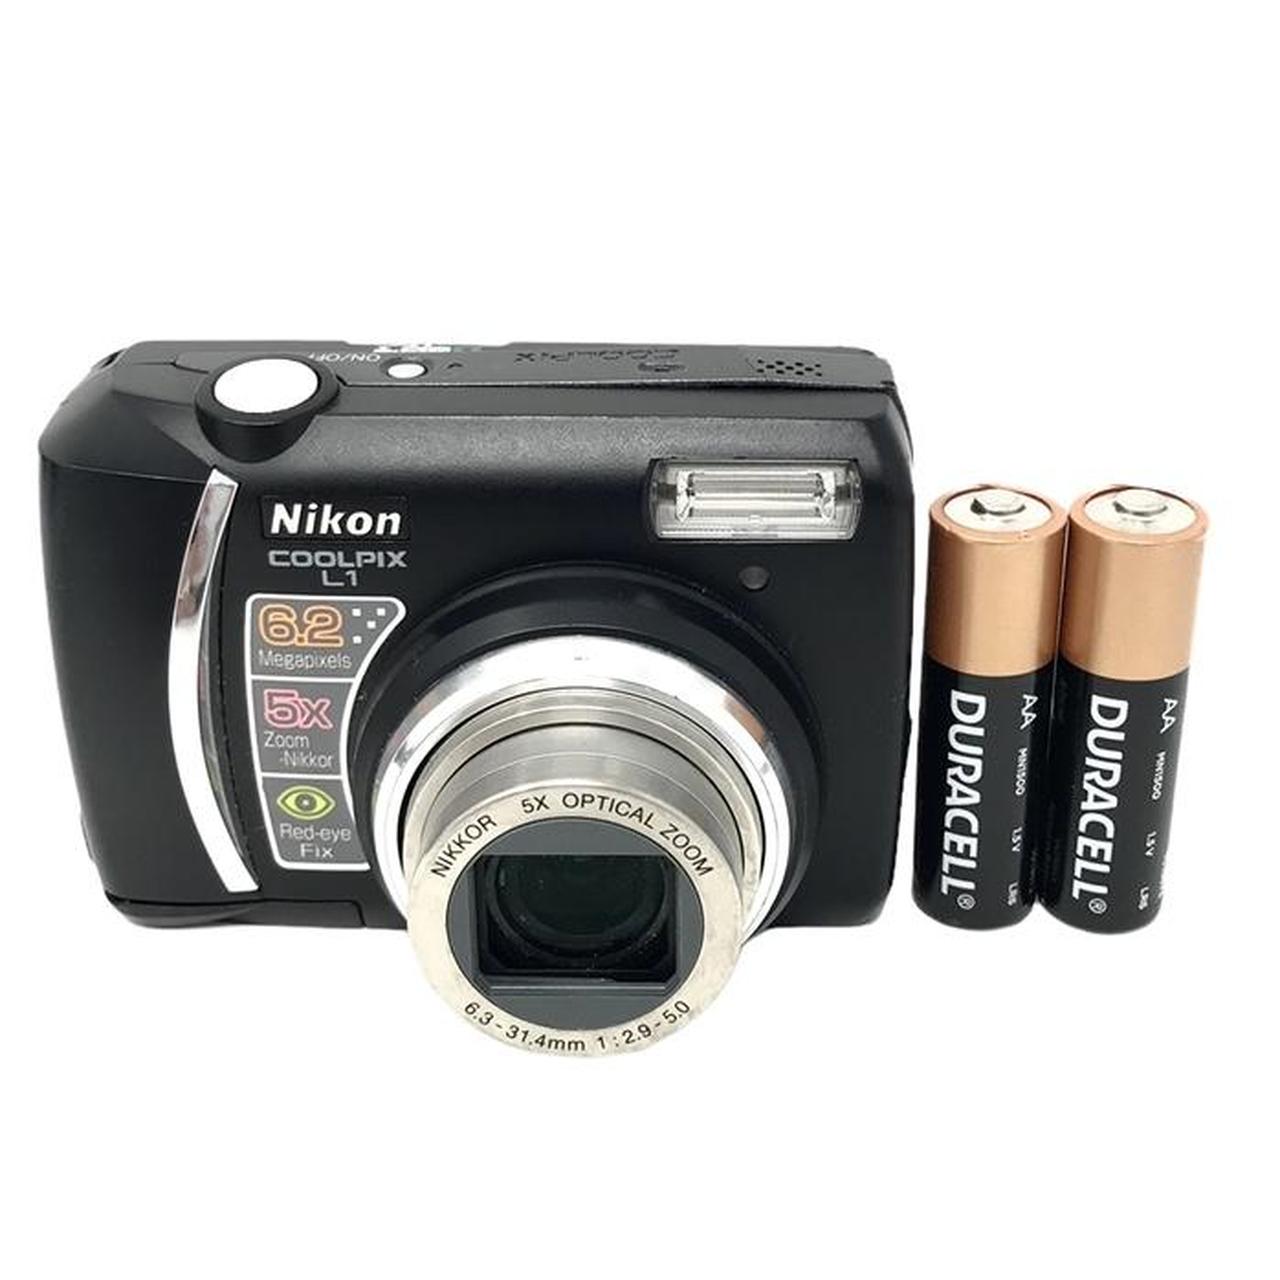 Product Image 1 - Nikon Coolpix L1 Digital Camera

Comes